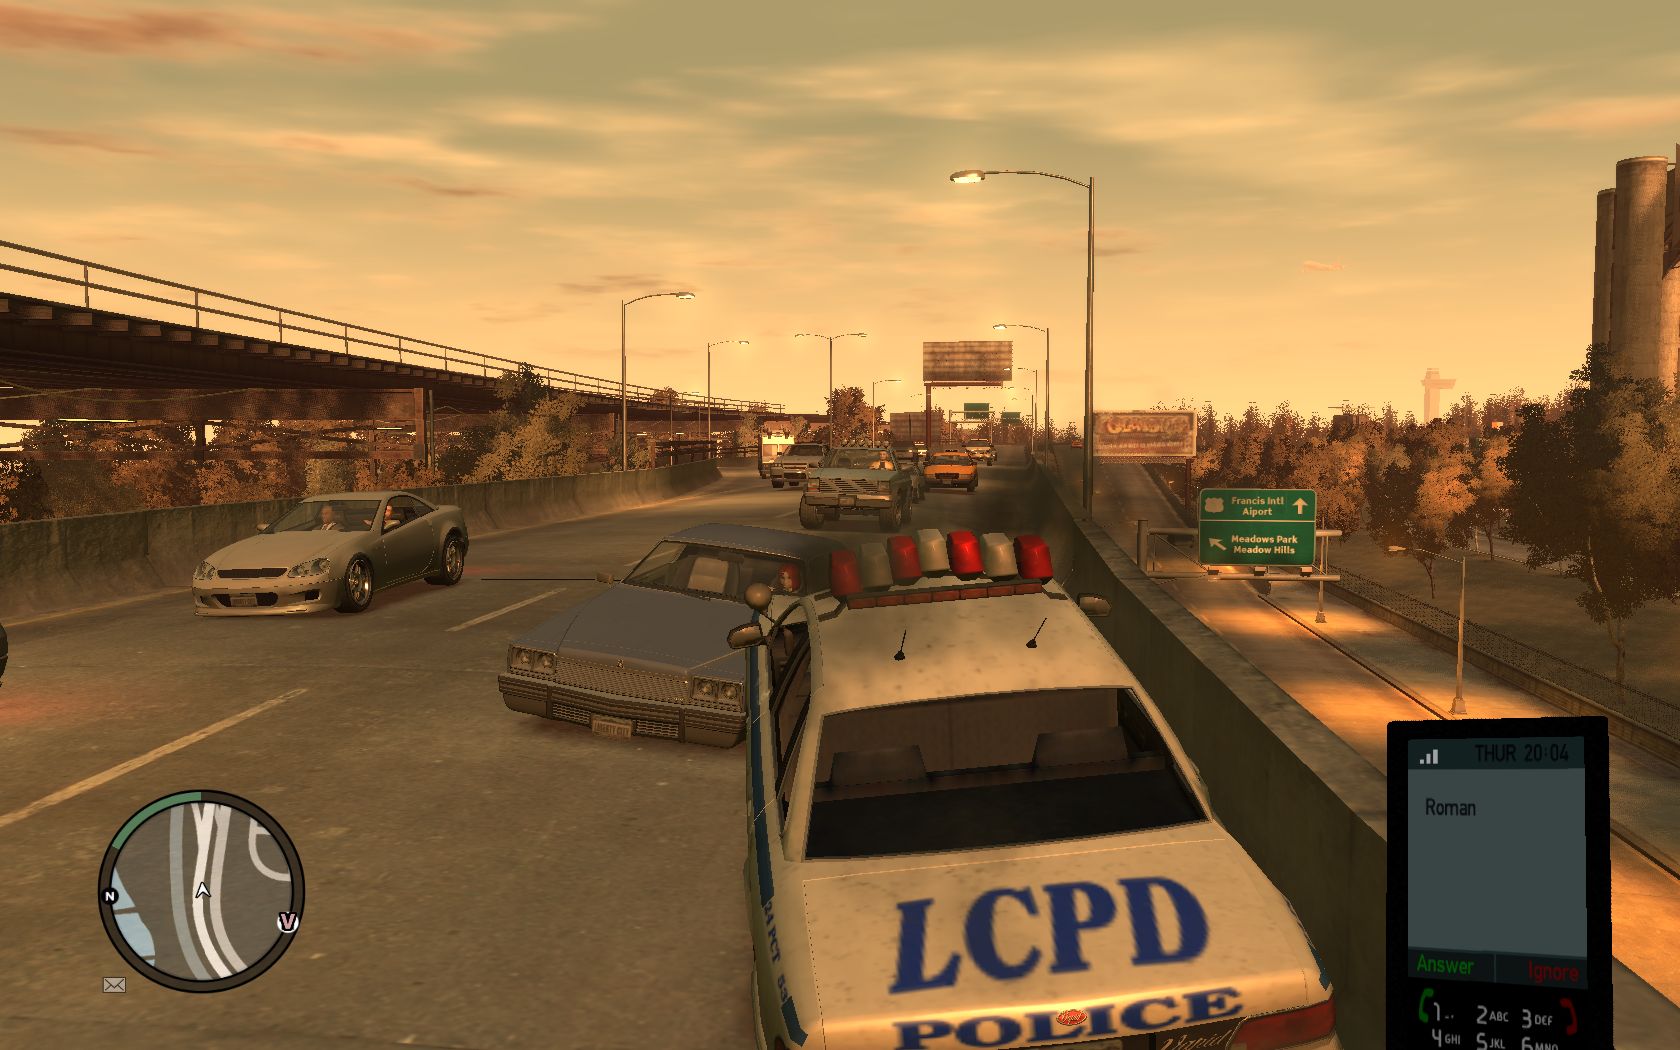 GTA IV (PC) PC verzia hry ponkne hust grafiku a aj hust premvku.